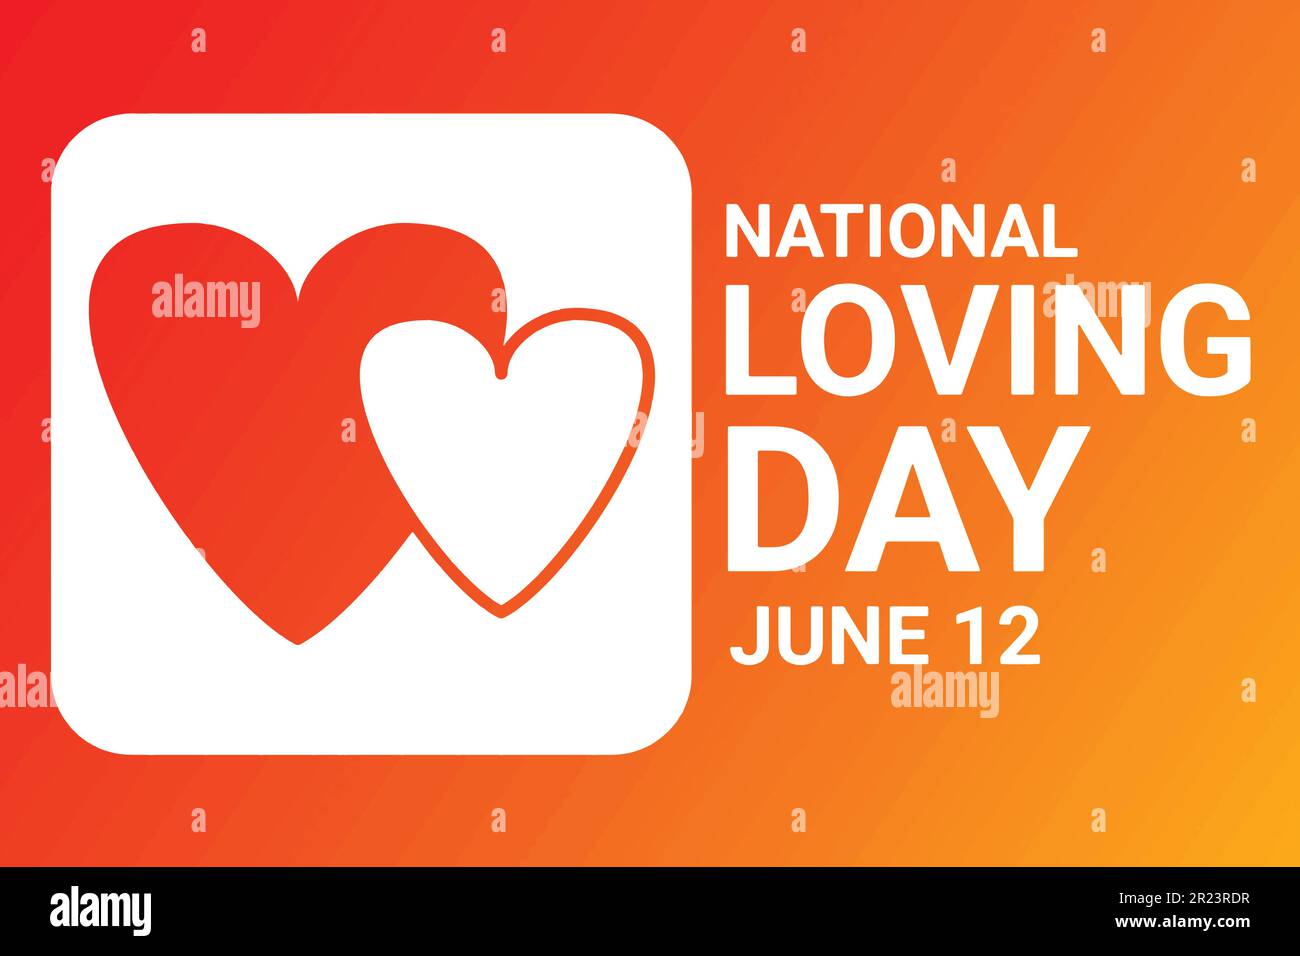 Vektordarstellung zum National Loving Day. Juni 12. Urlaubskonzept. Vorlage für Hintergrund, Banner, Karte, Poster mit Texteindruck. Stock Vektor